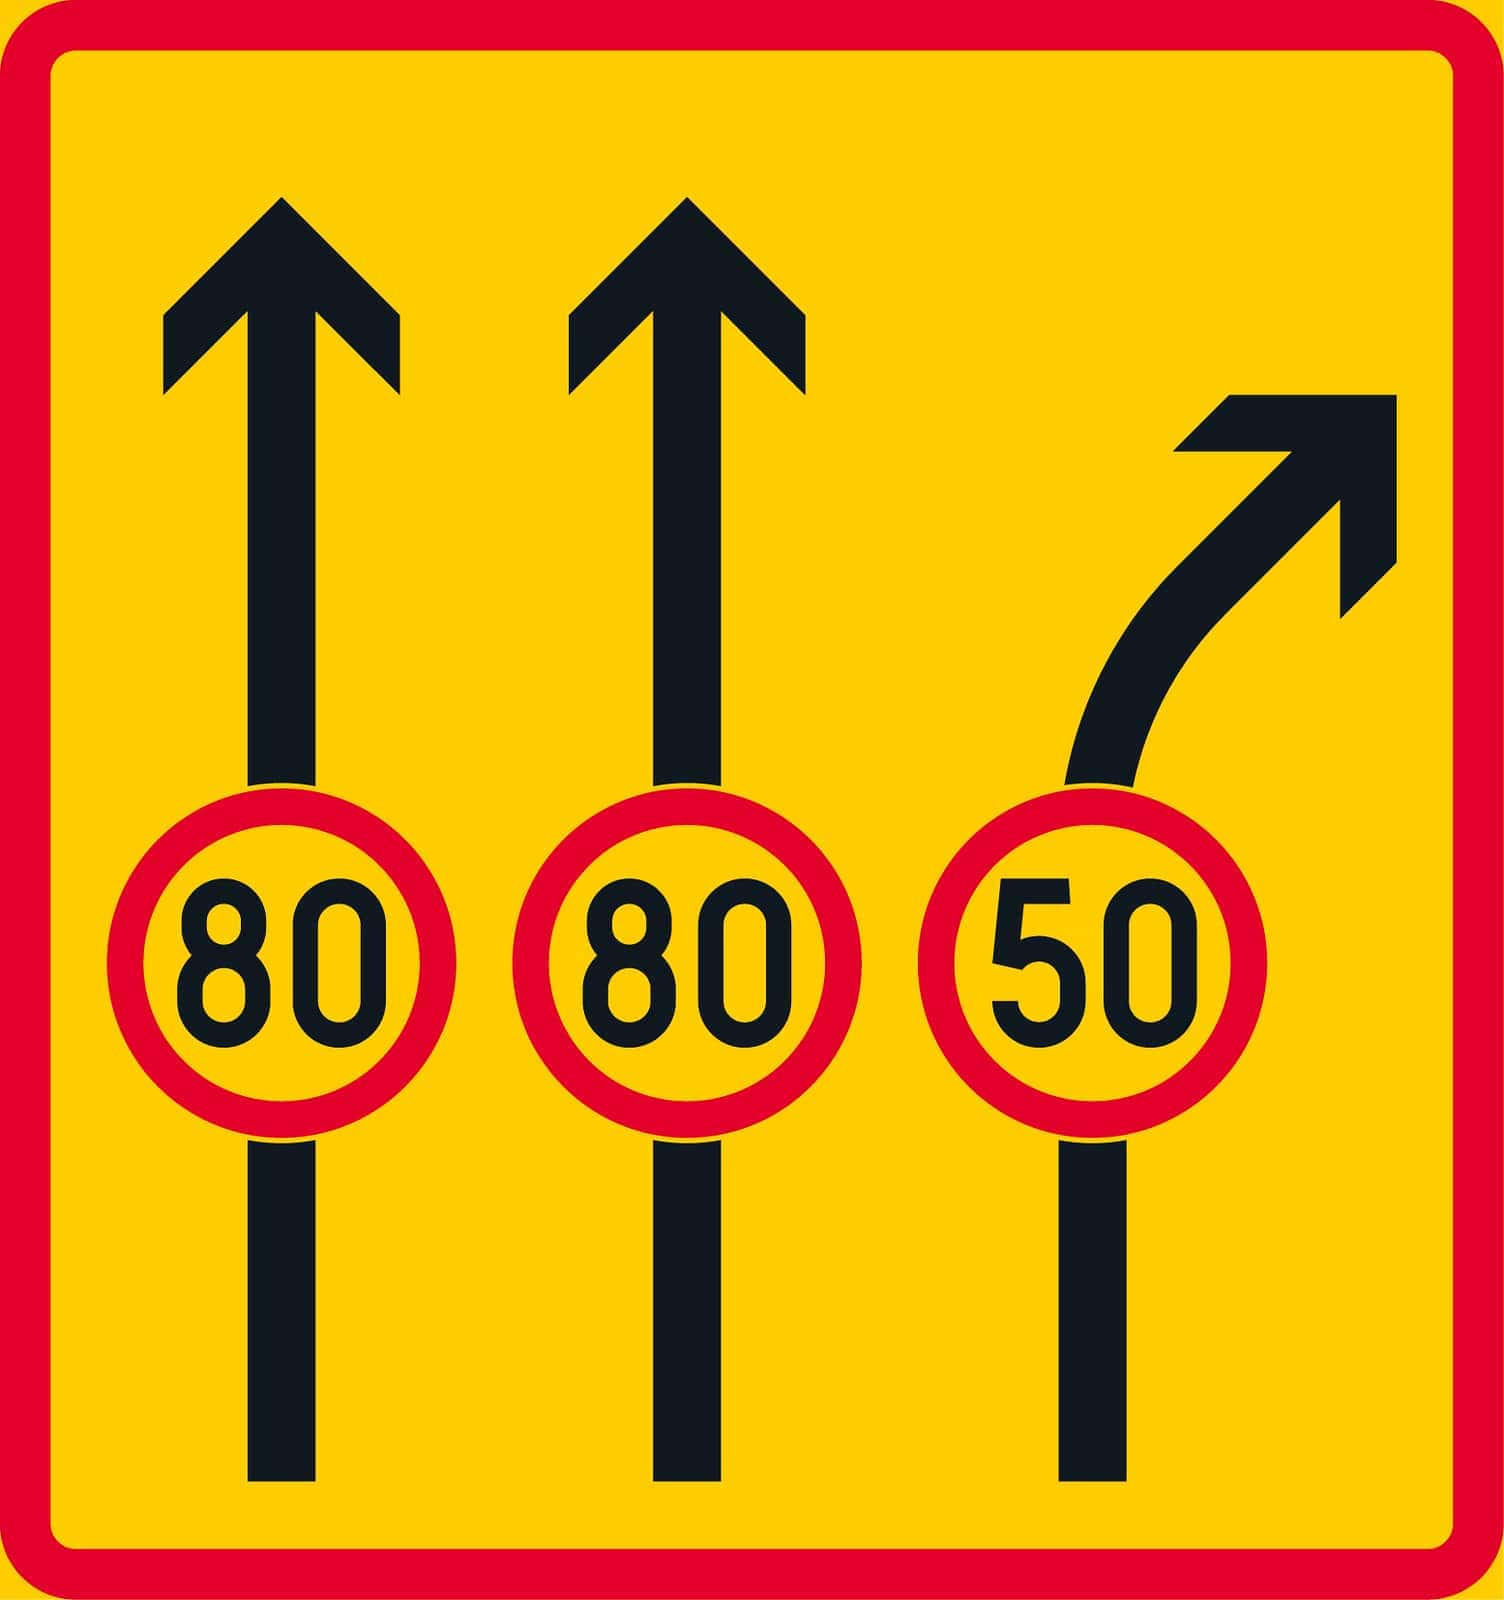 Liikennemerkki C36: Ajokaistakohtainen kielto, rajoitus tai määräys